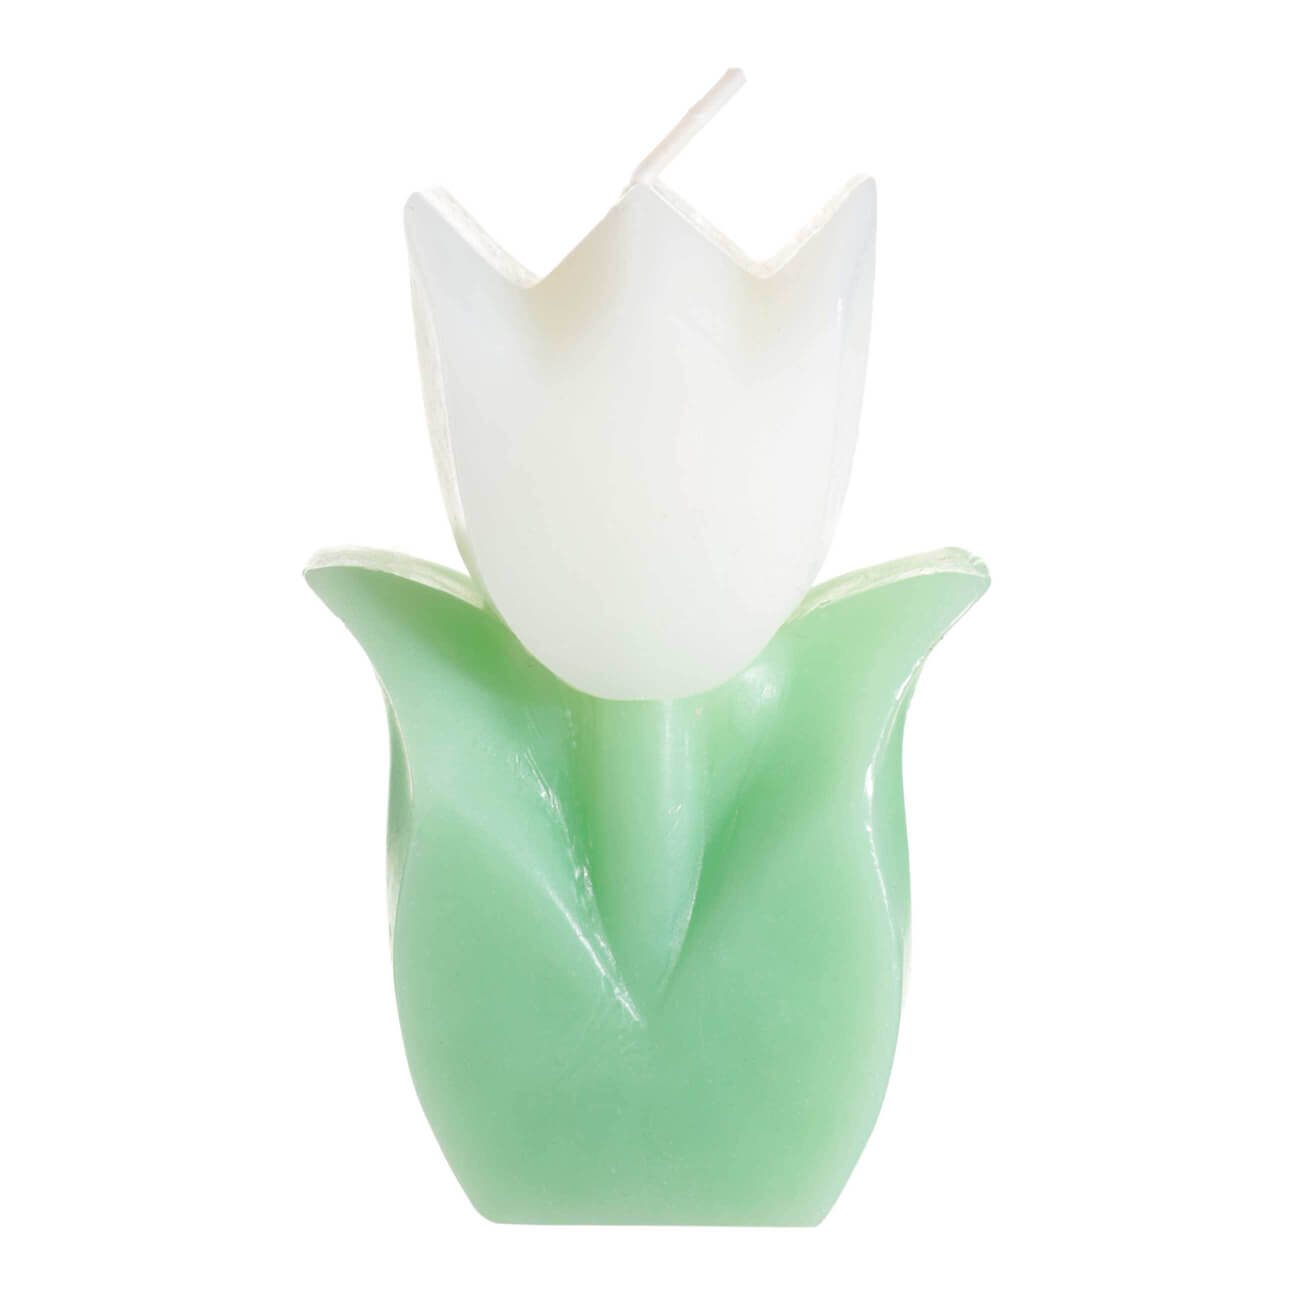 Свеча, 10 см, бело-зеленая, Тюльпан, Tulip garden свеча в гильзе